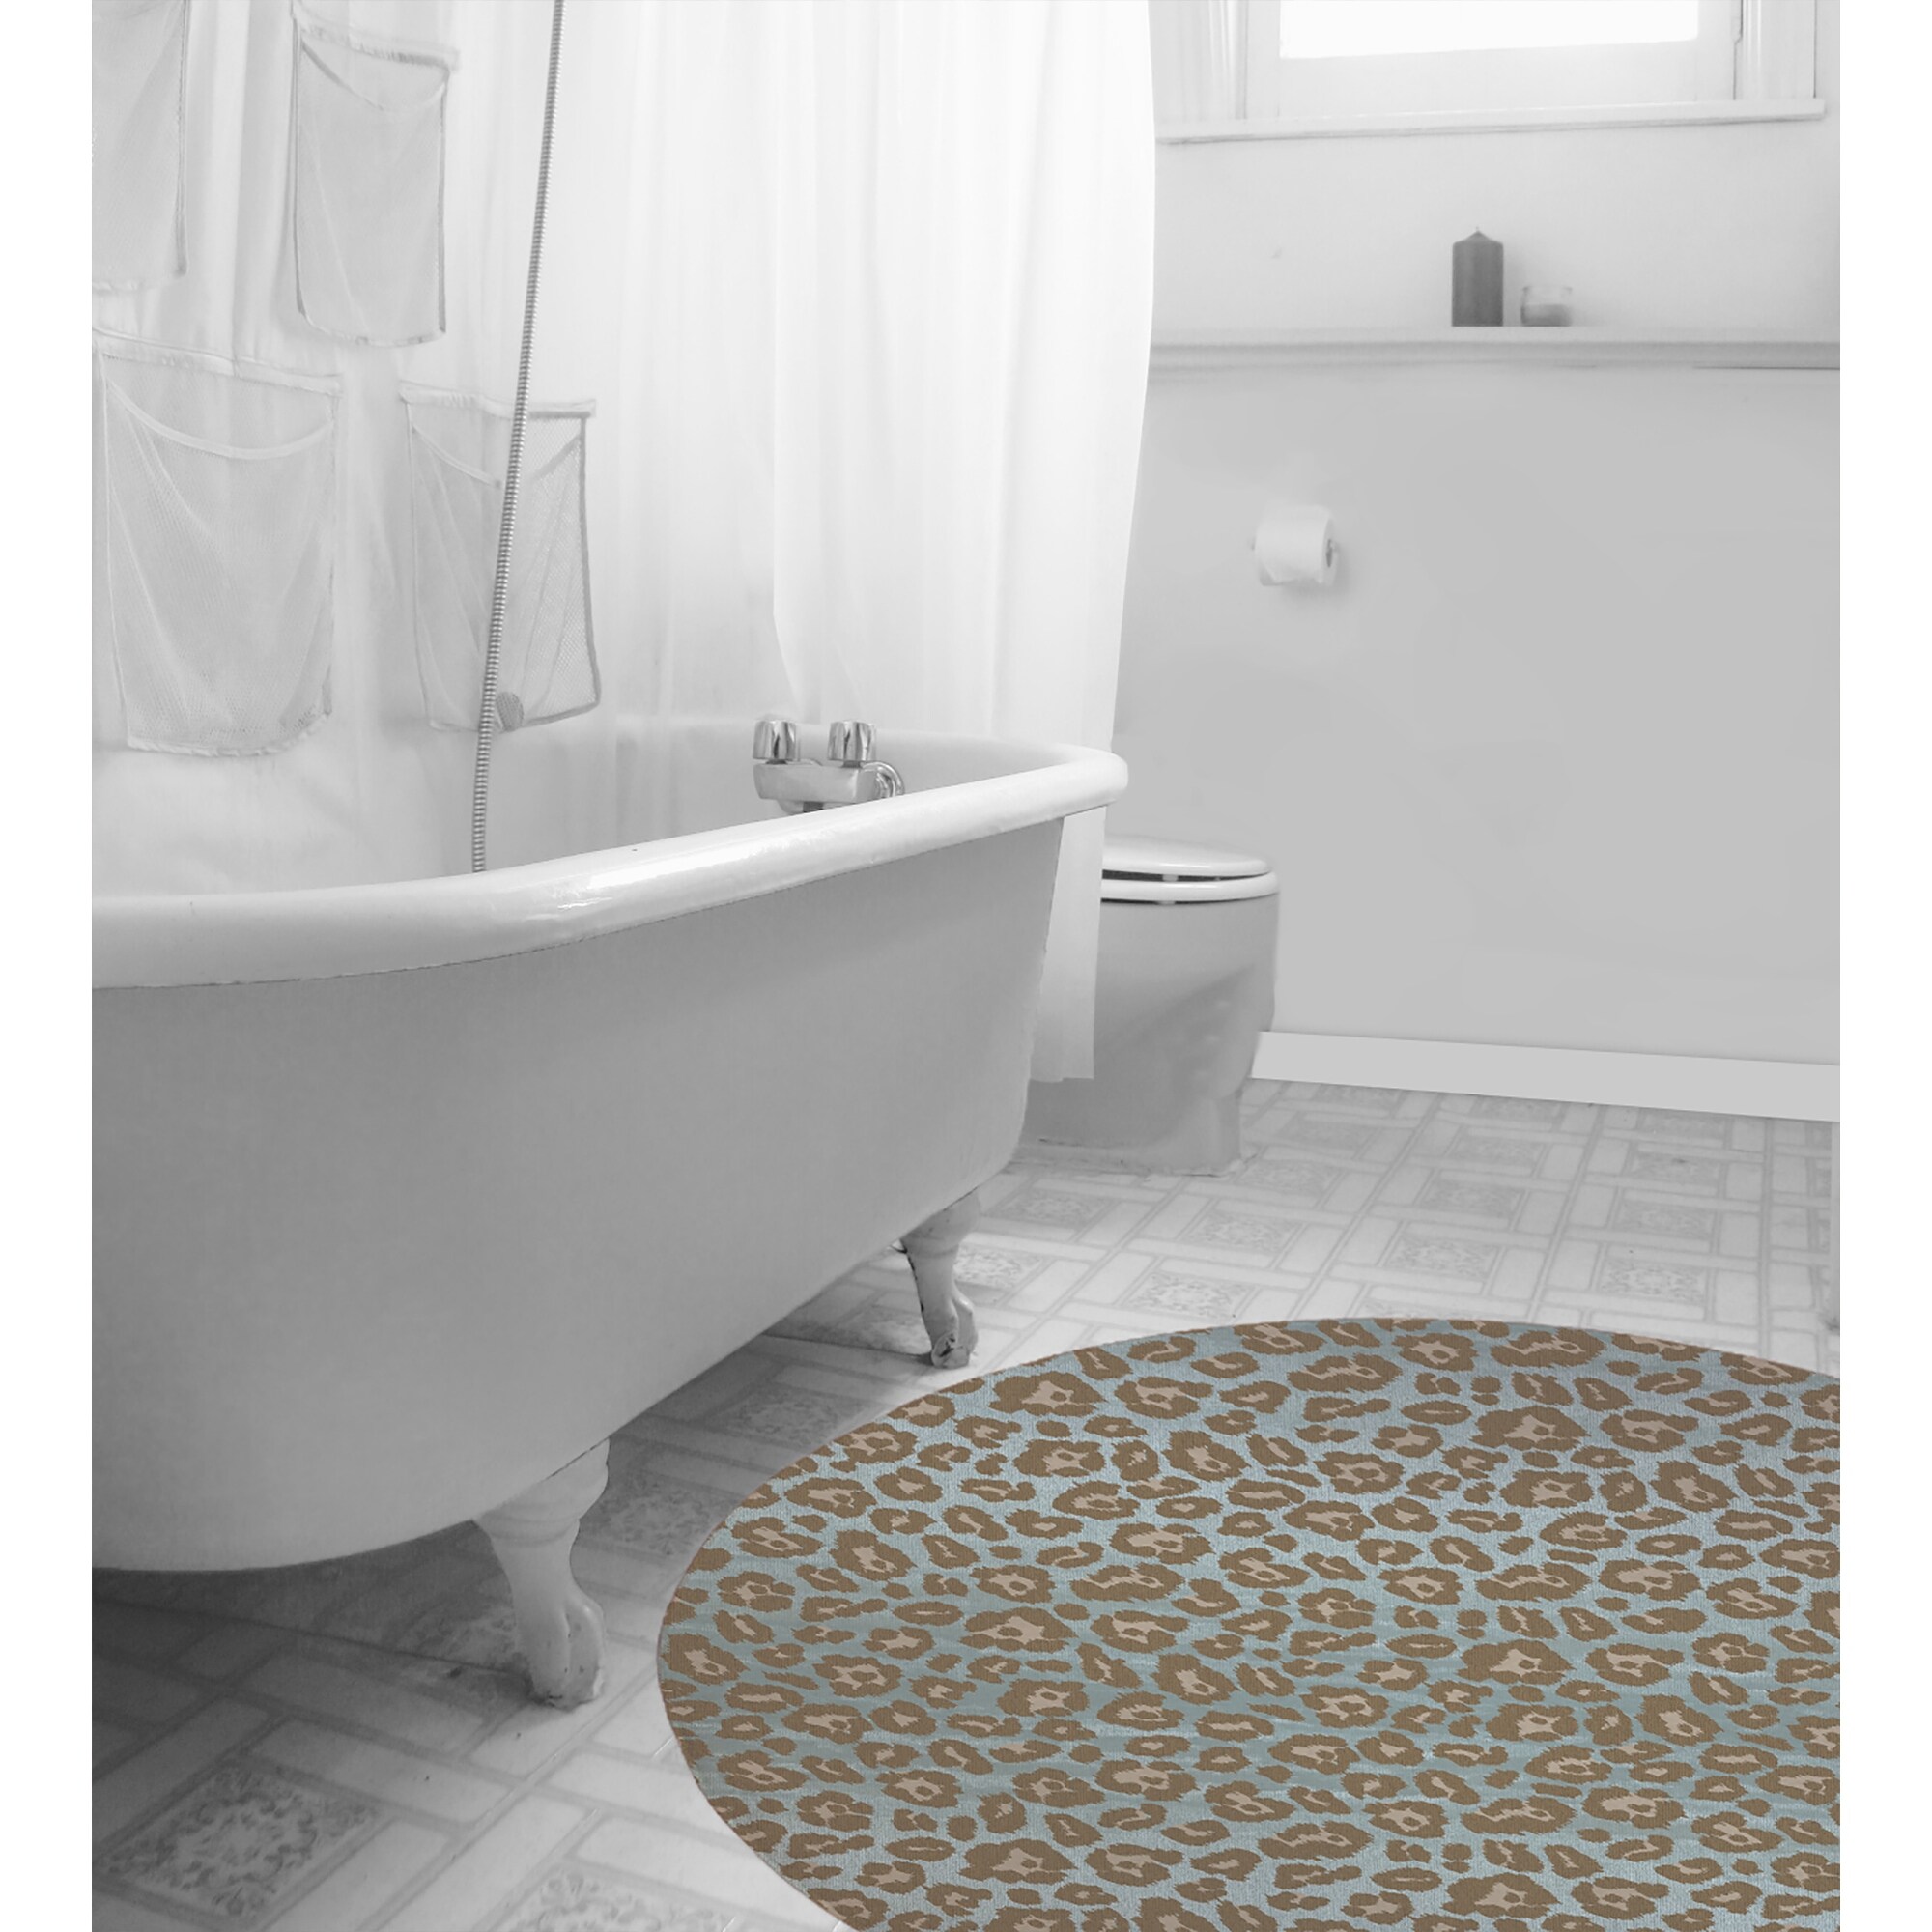 CHEETAH BLUE & TAUPE Bath Rug By Kavka Designs